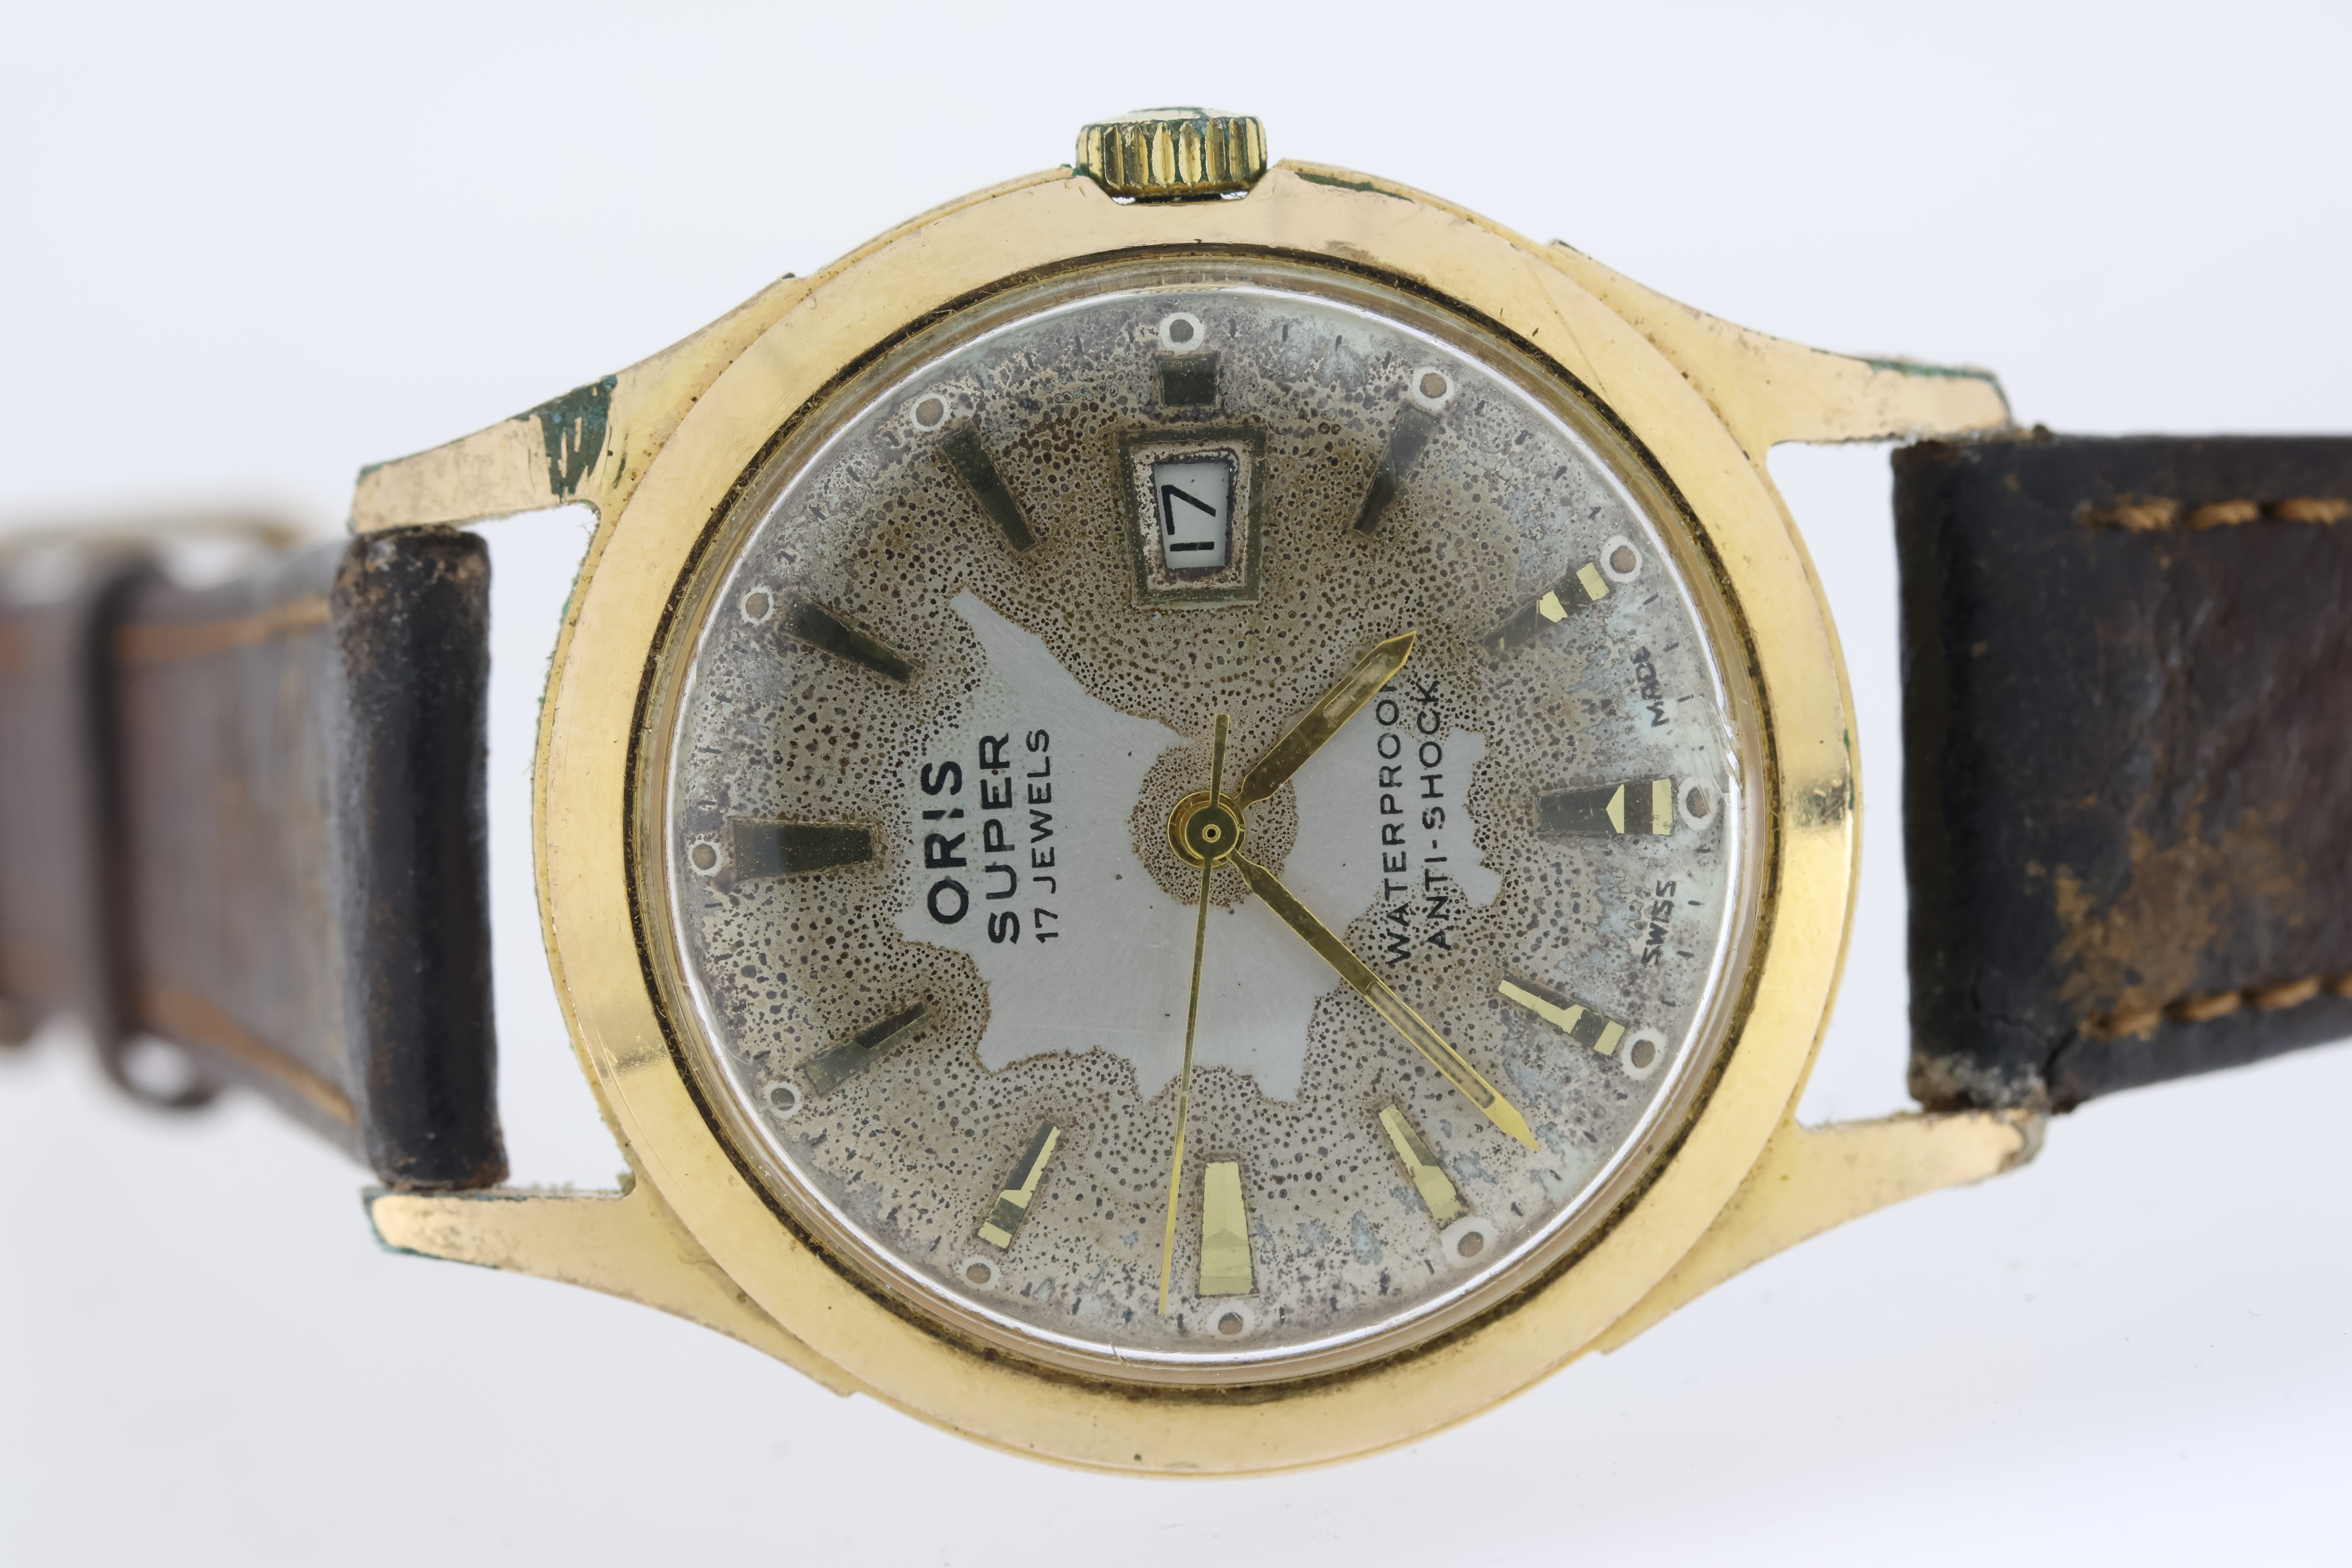 Job lot of 5 wristwatches. Including a Seiko sportmatic automatic, Seiko quartz chronograph, - Image 5 of 6